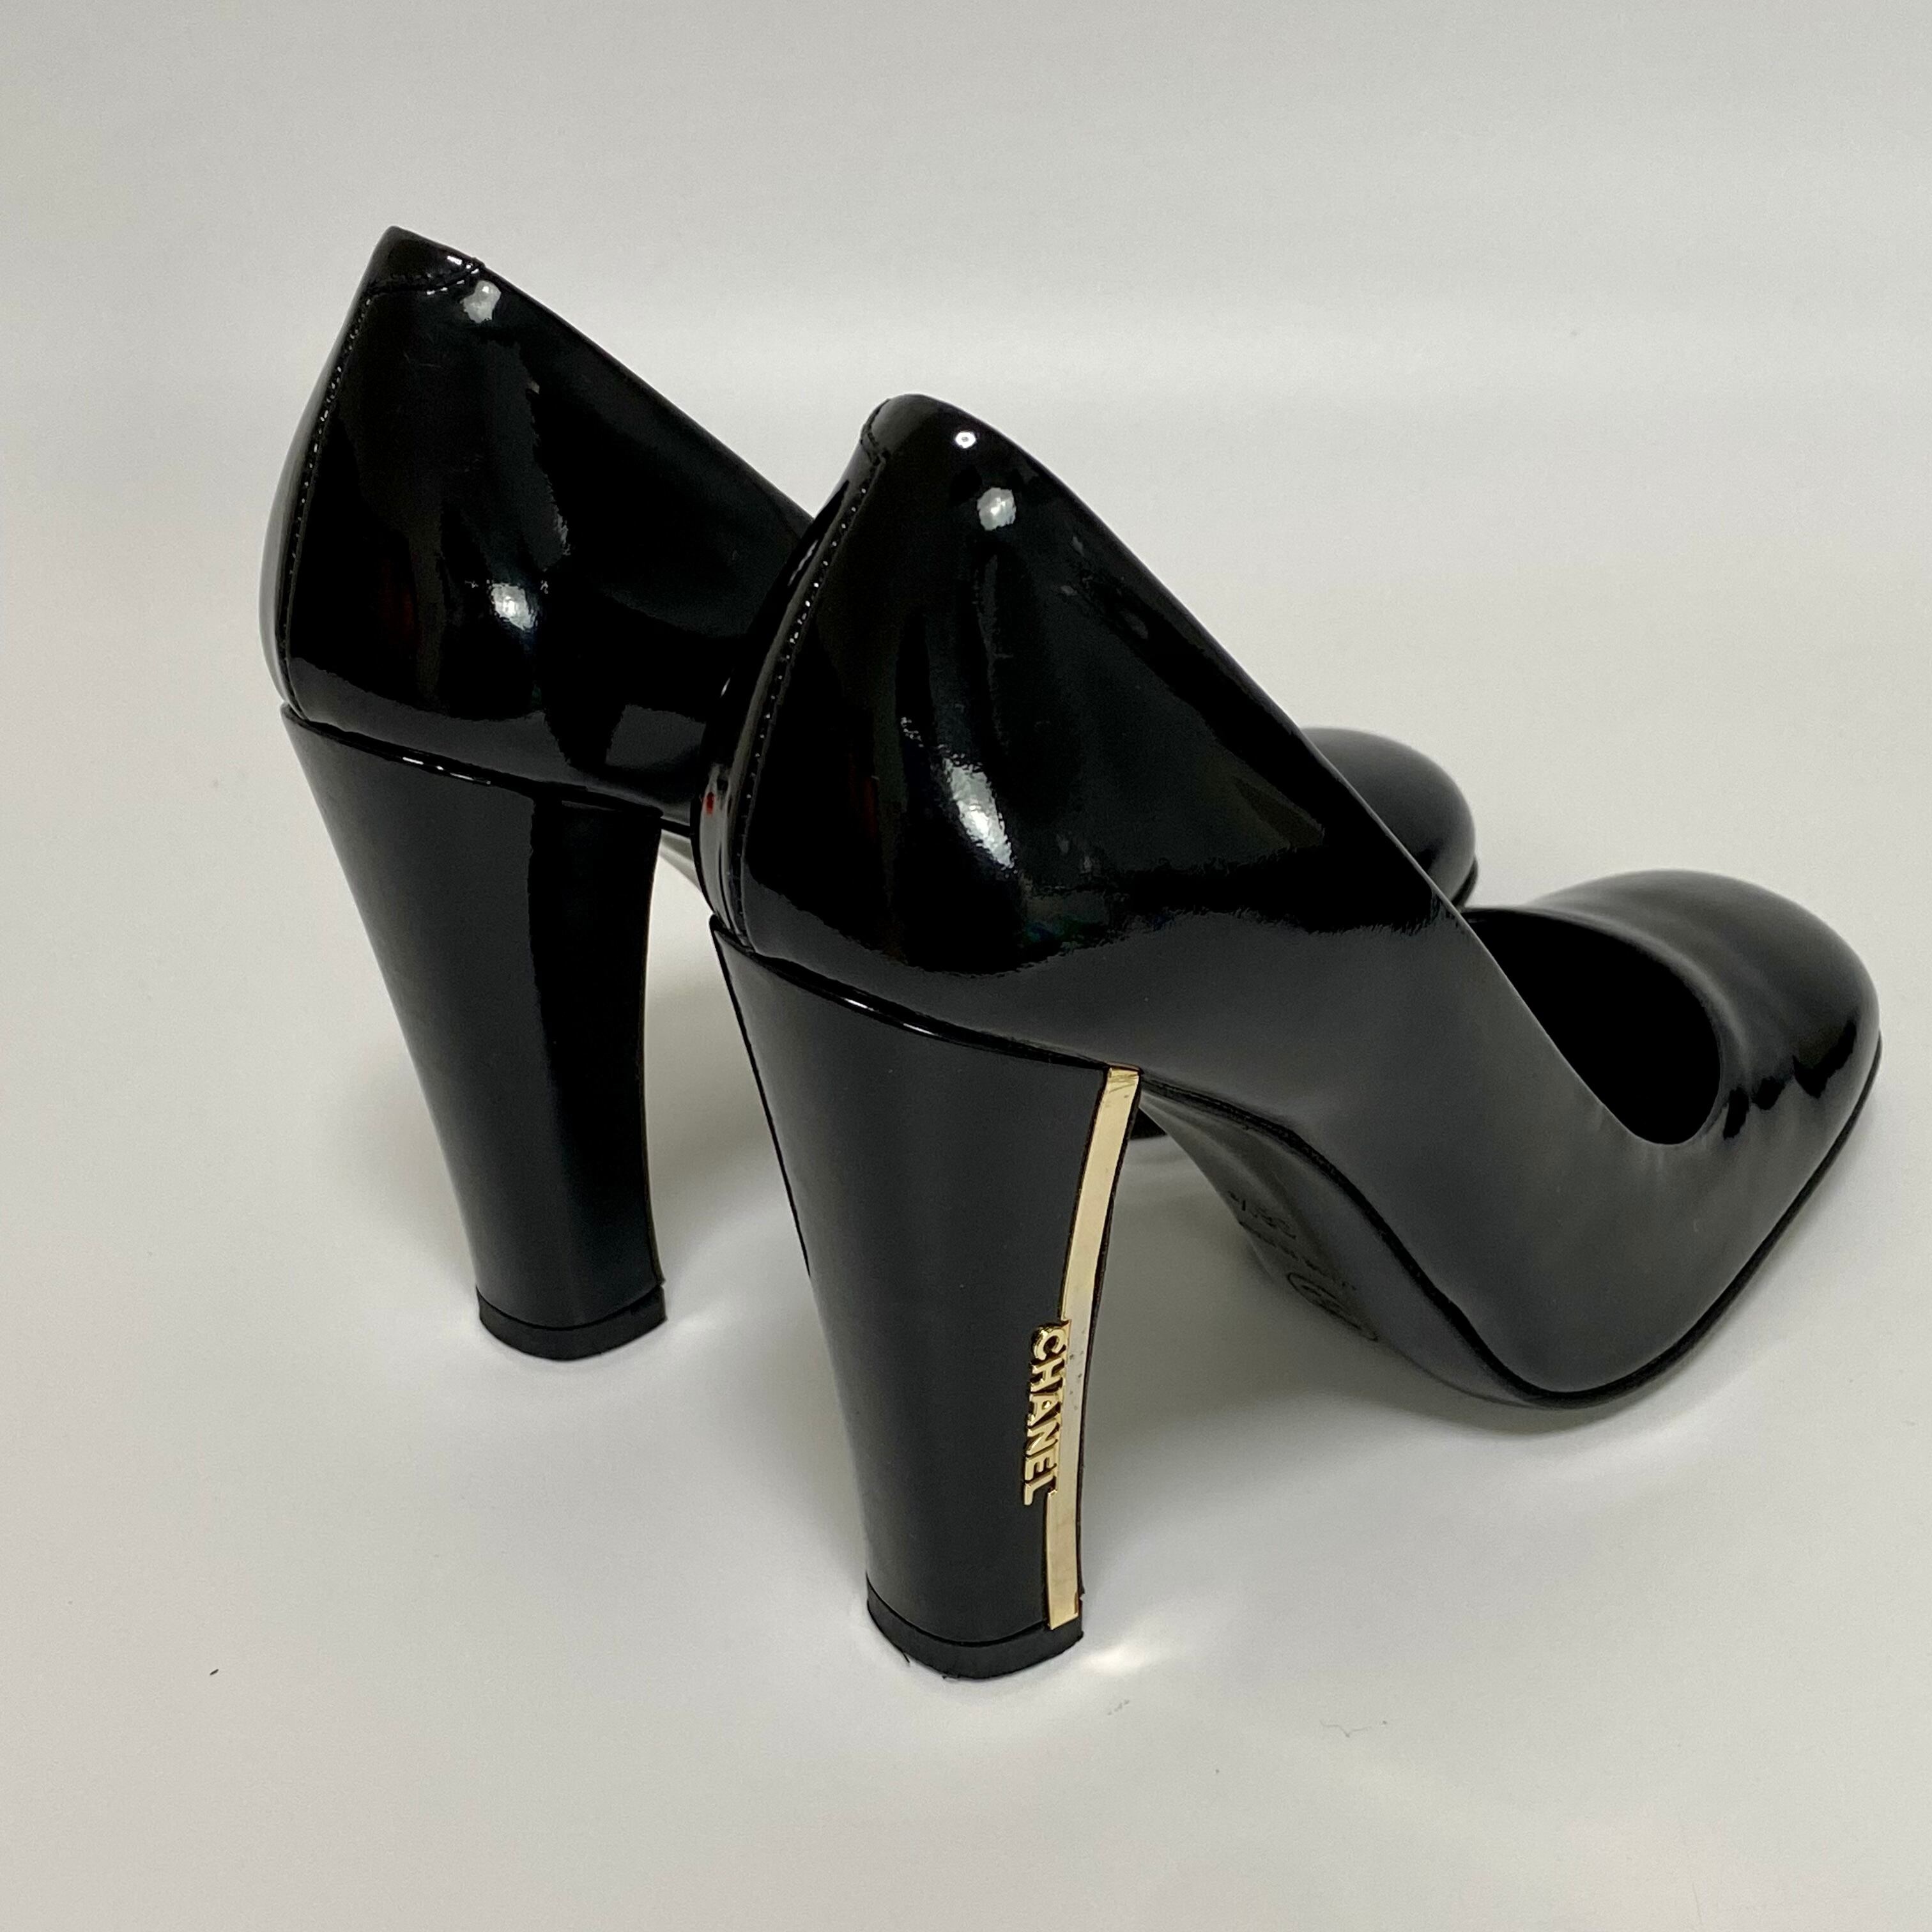 CHANEL シャネル パンプス エナメル ブラック 36.5サイズ 靴 8921